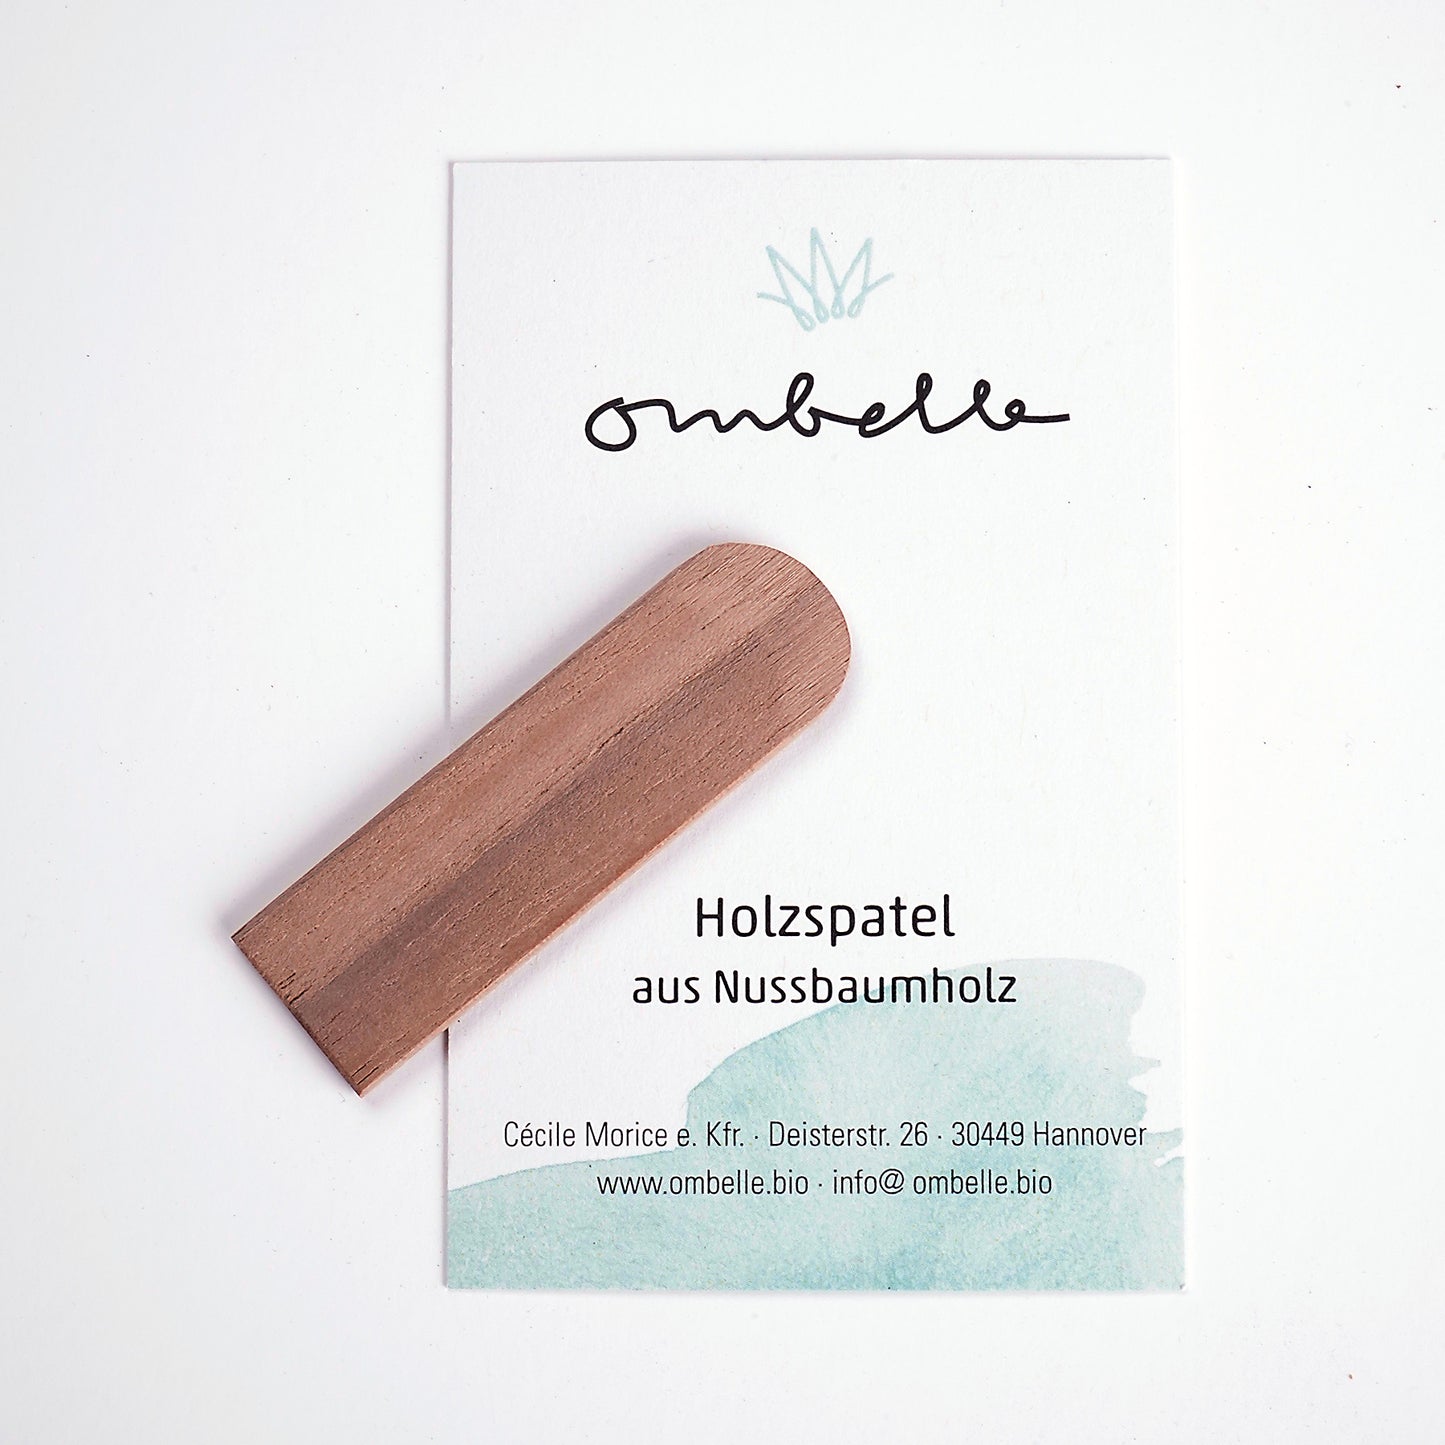 Ombelle Naturkosmetik Holz Spatel (mit Infokarte) handgemacht aus Nussbaum zur hygienischen Entnahme von Bio Deocreme und unraffinierter Fair Trade Shea Butter